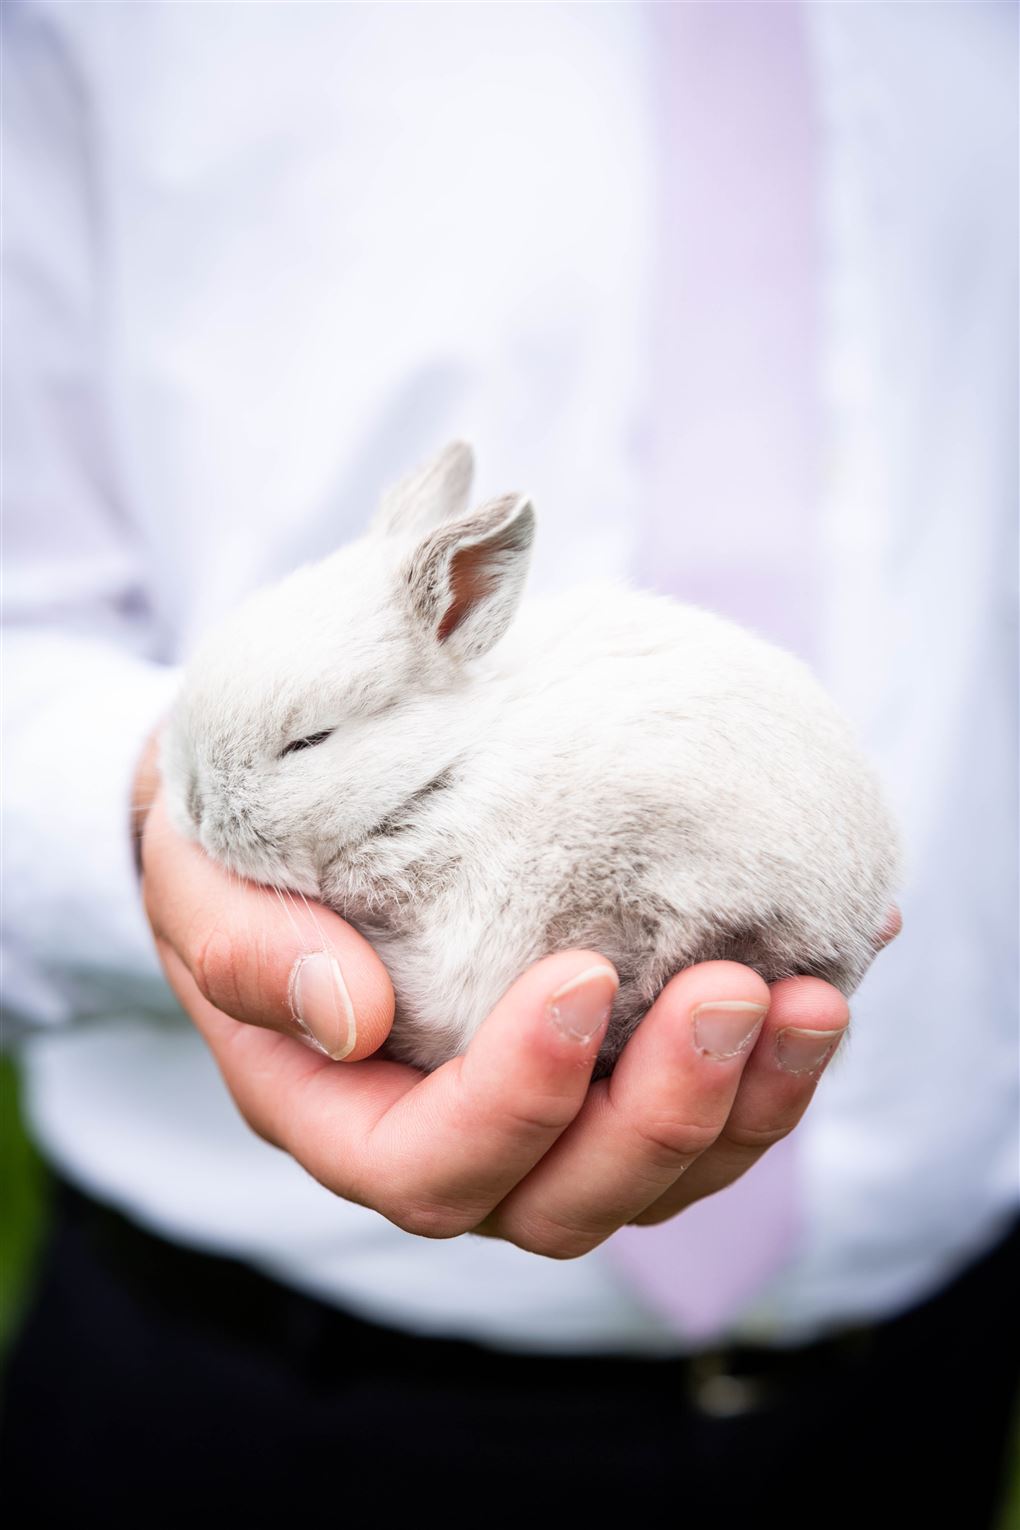 En lille kanin sidder i en hånd